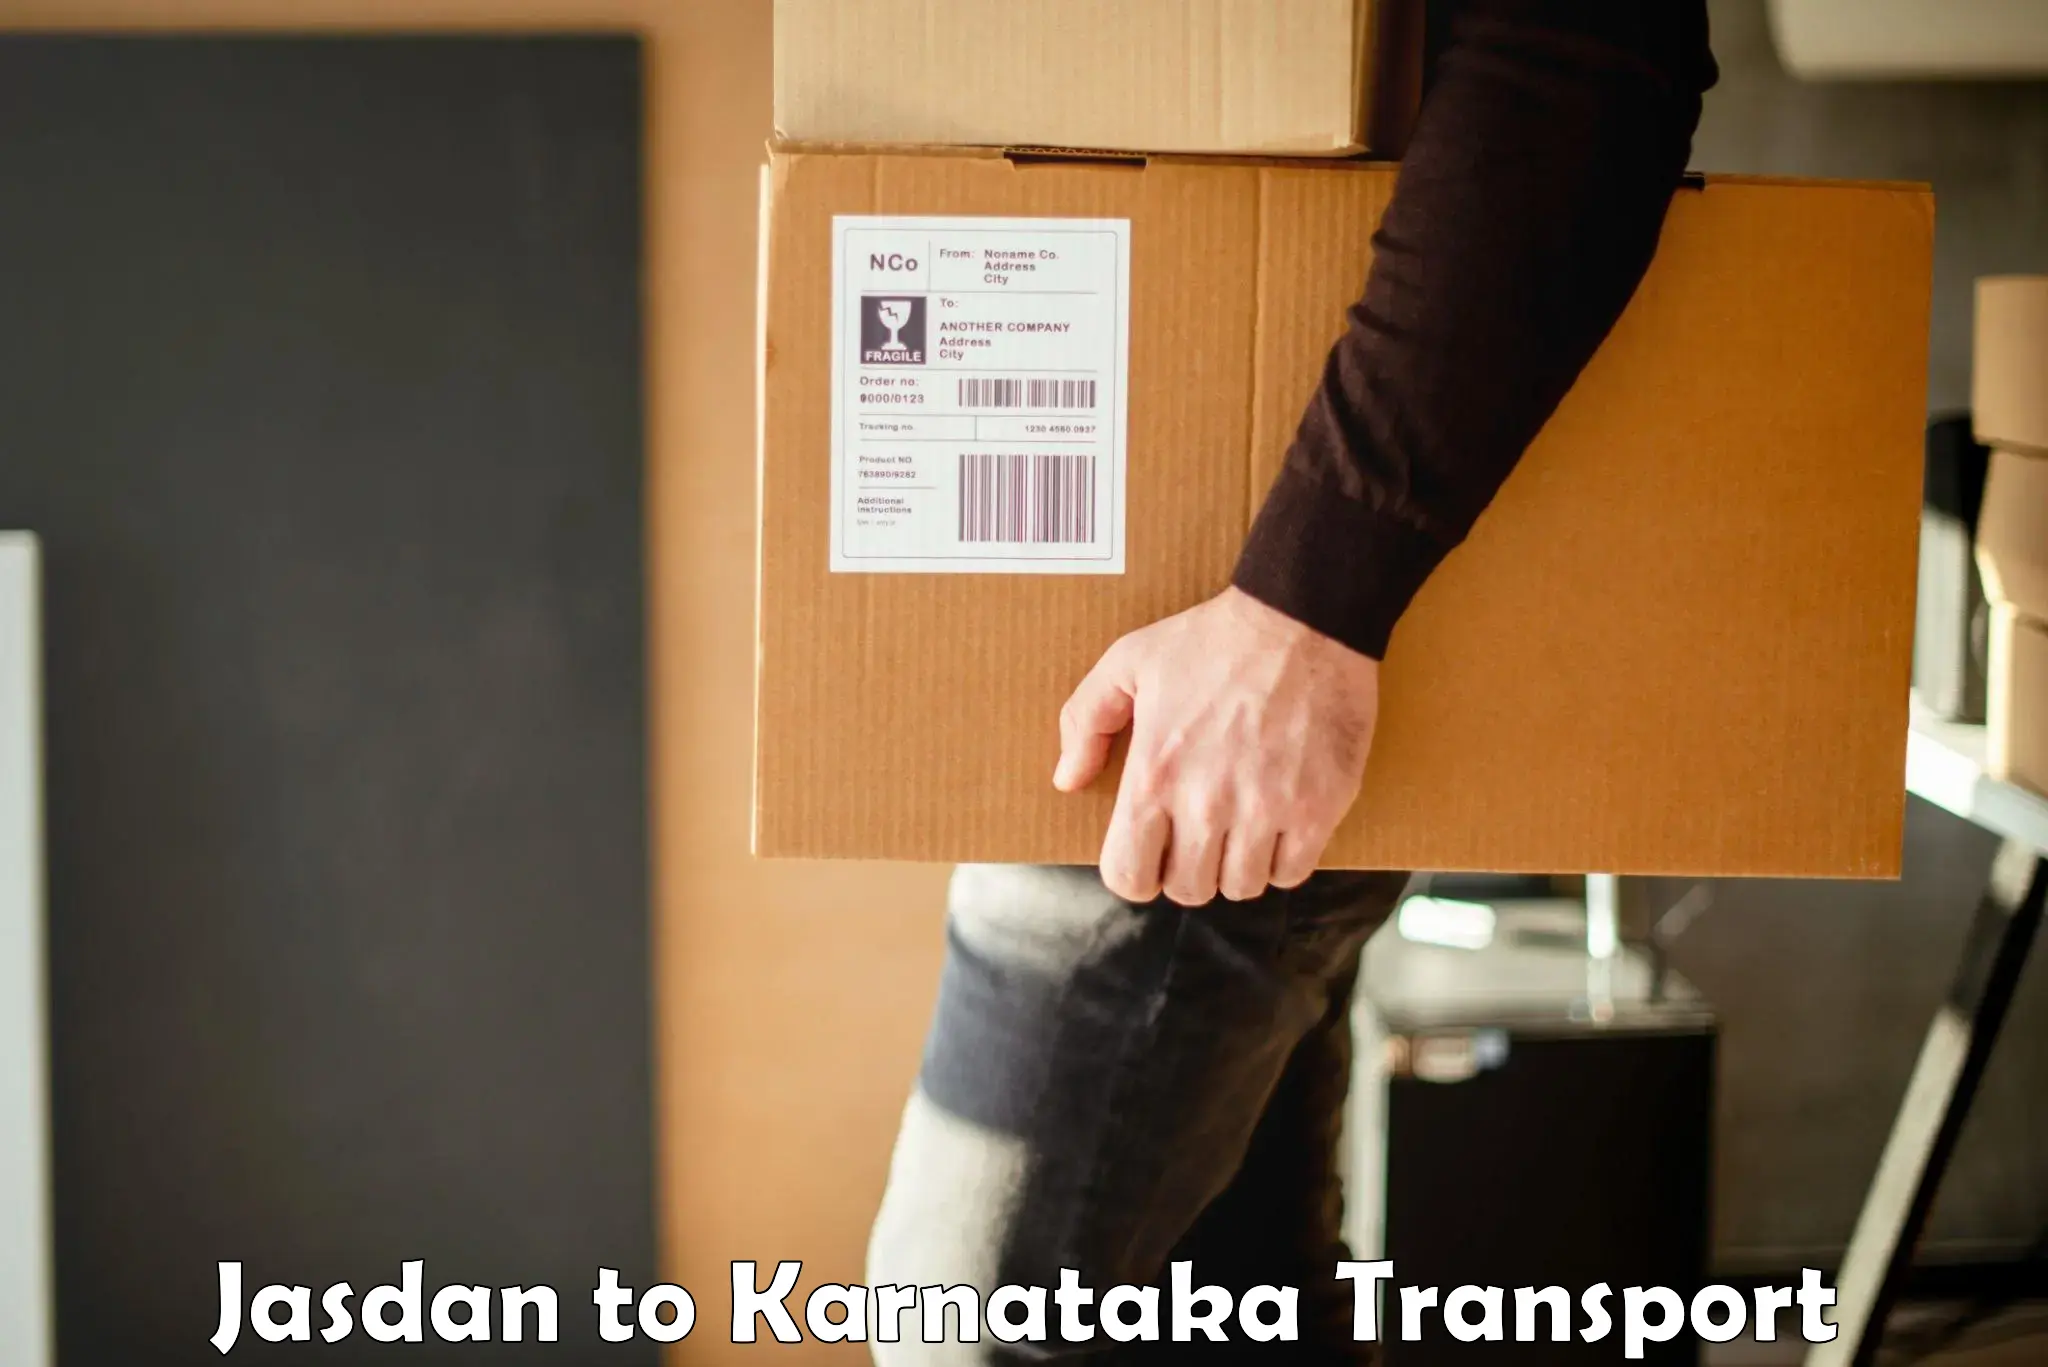 Container transport service Jasdan to Kalaburagi